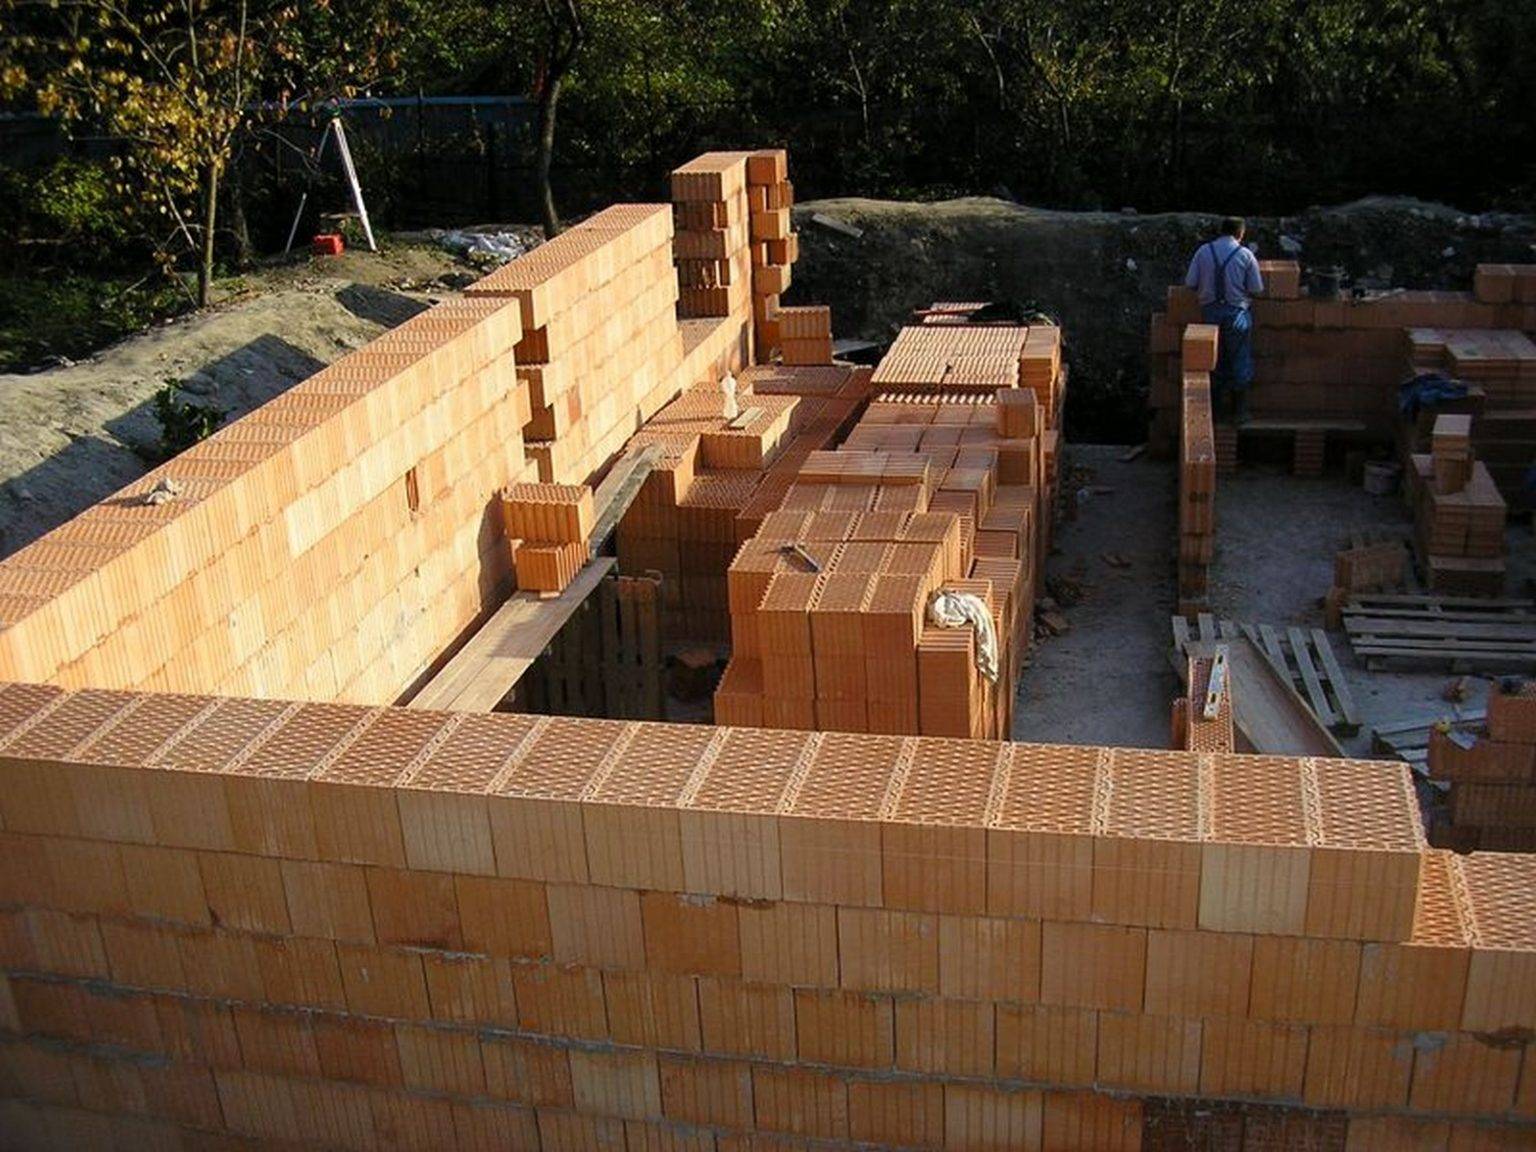 Кирпичный дом своими руками – строим дом из кирпича, поэтапная инструкция